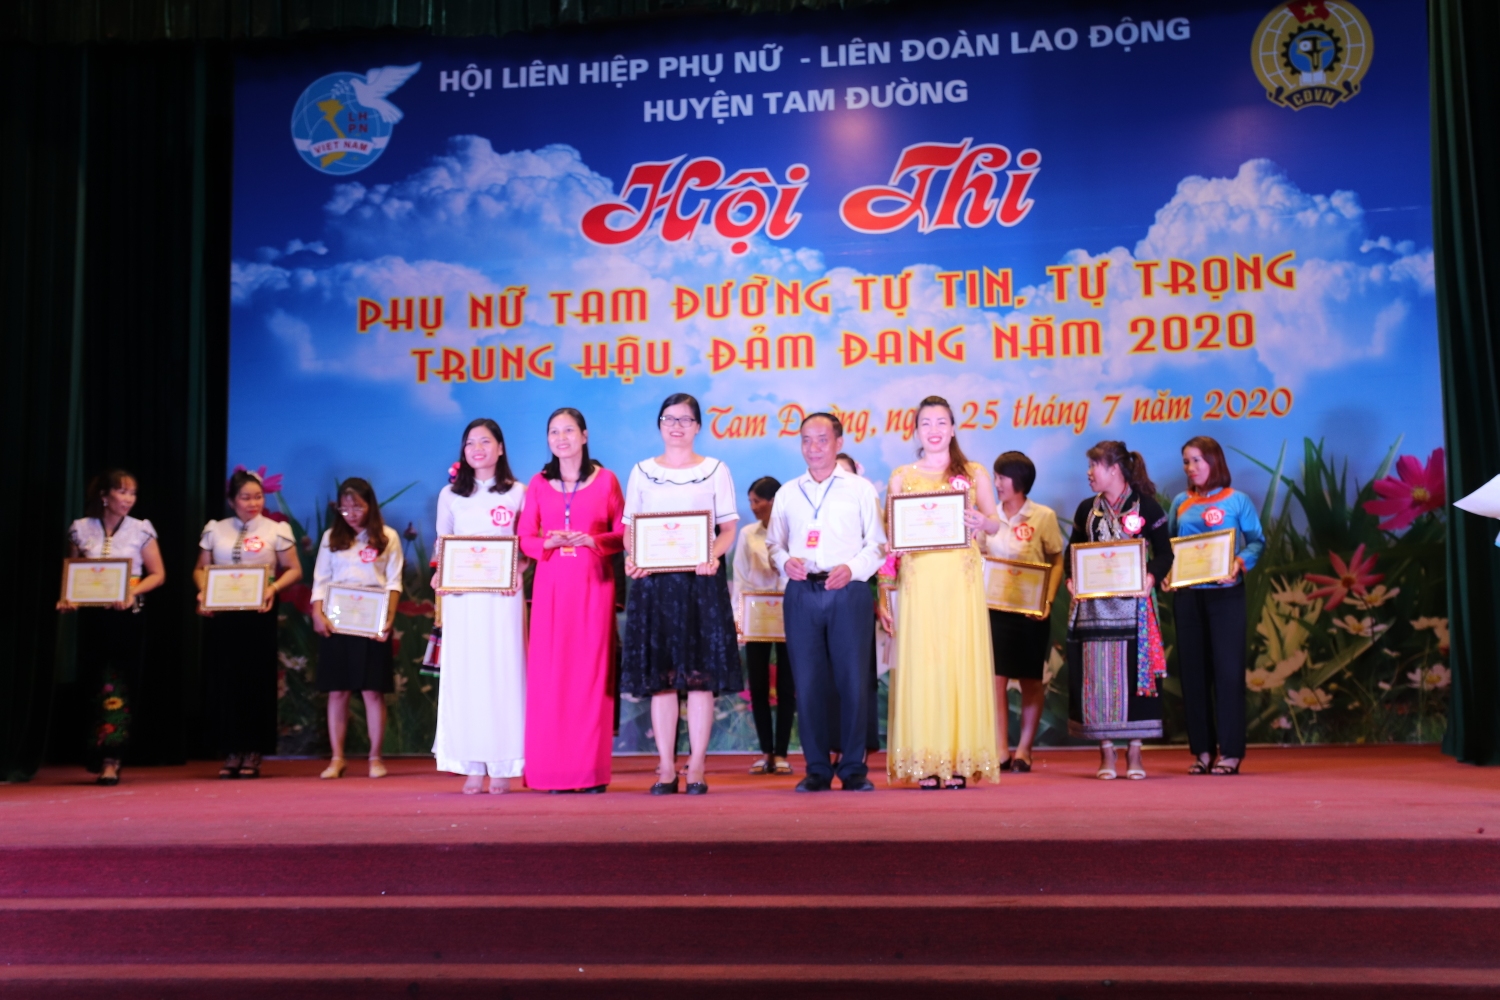 Đồng chí Đỗ Quốc Tuấn - Chủ tịch LĐLĐ huyện và đồng chí Vũ Thị Phượng - Chủ tịch Hội LHPN huyện trao giải Nhất, Nhì cho các đội tham gia đạt giải.